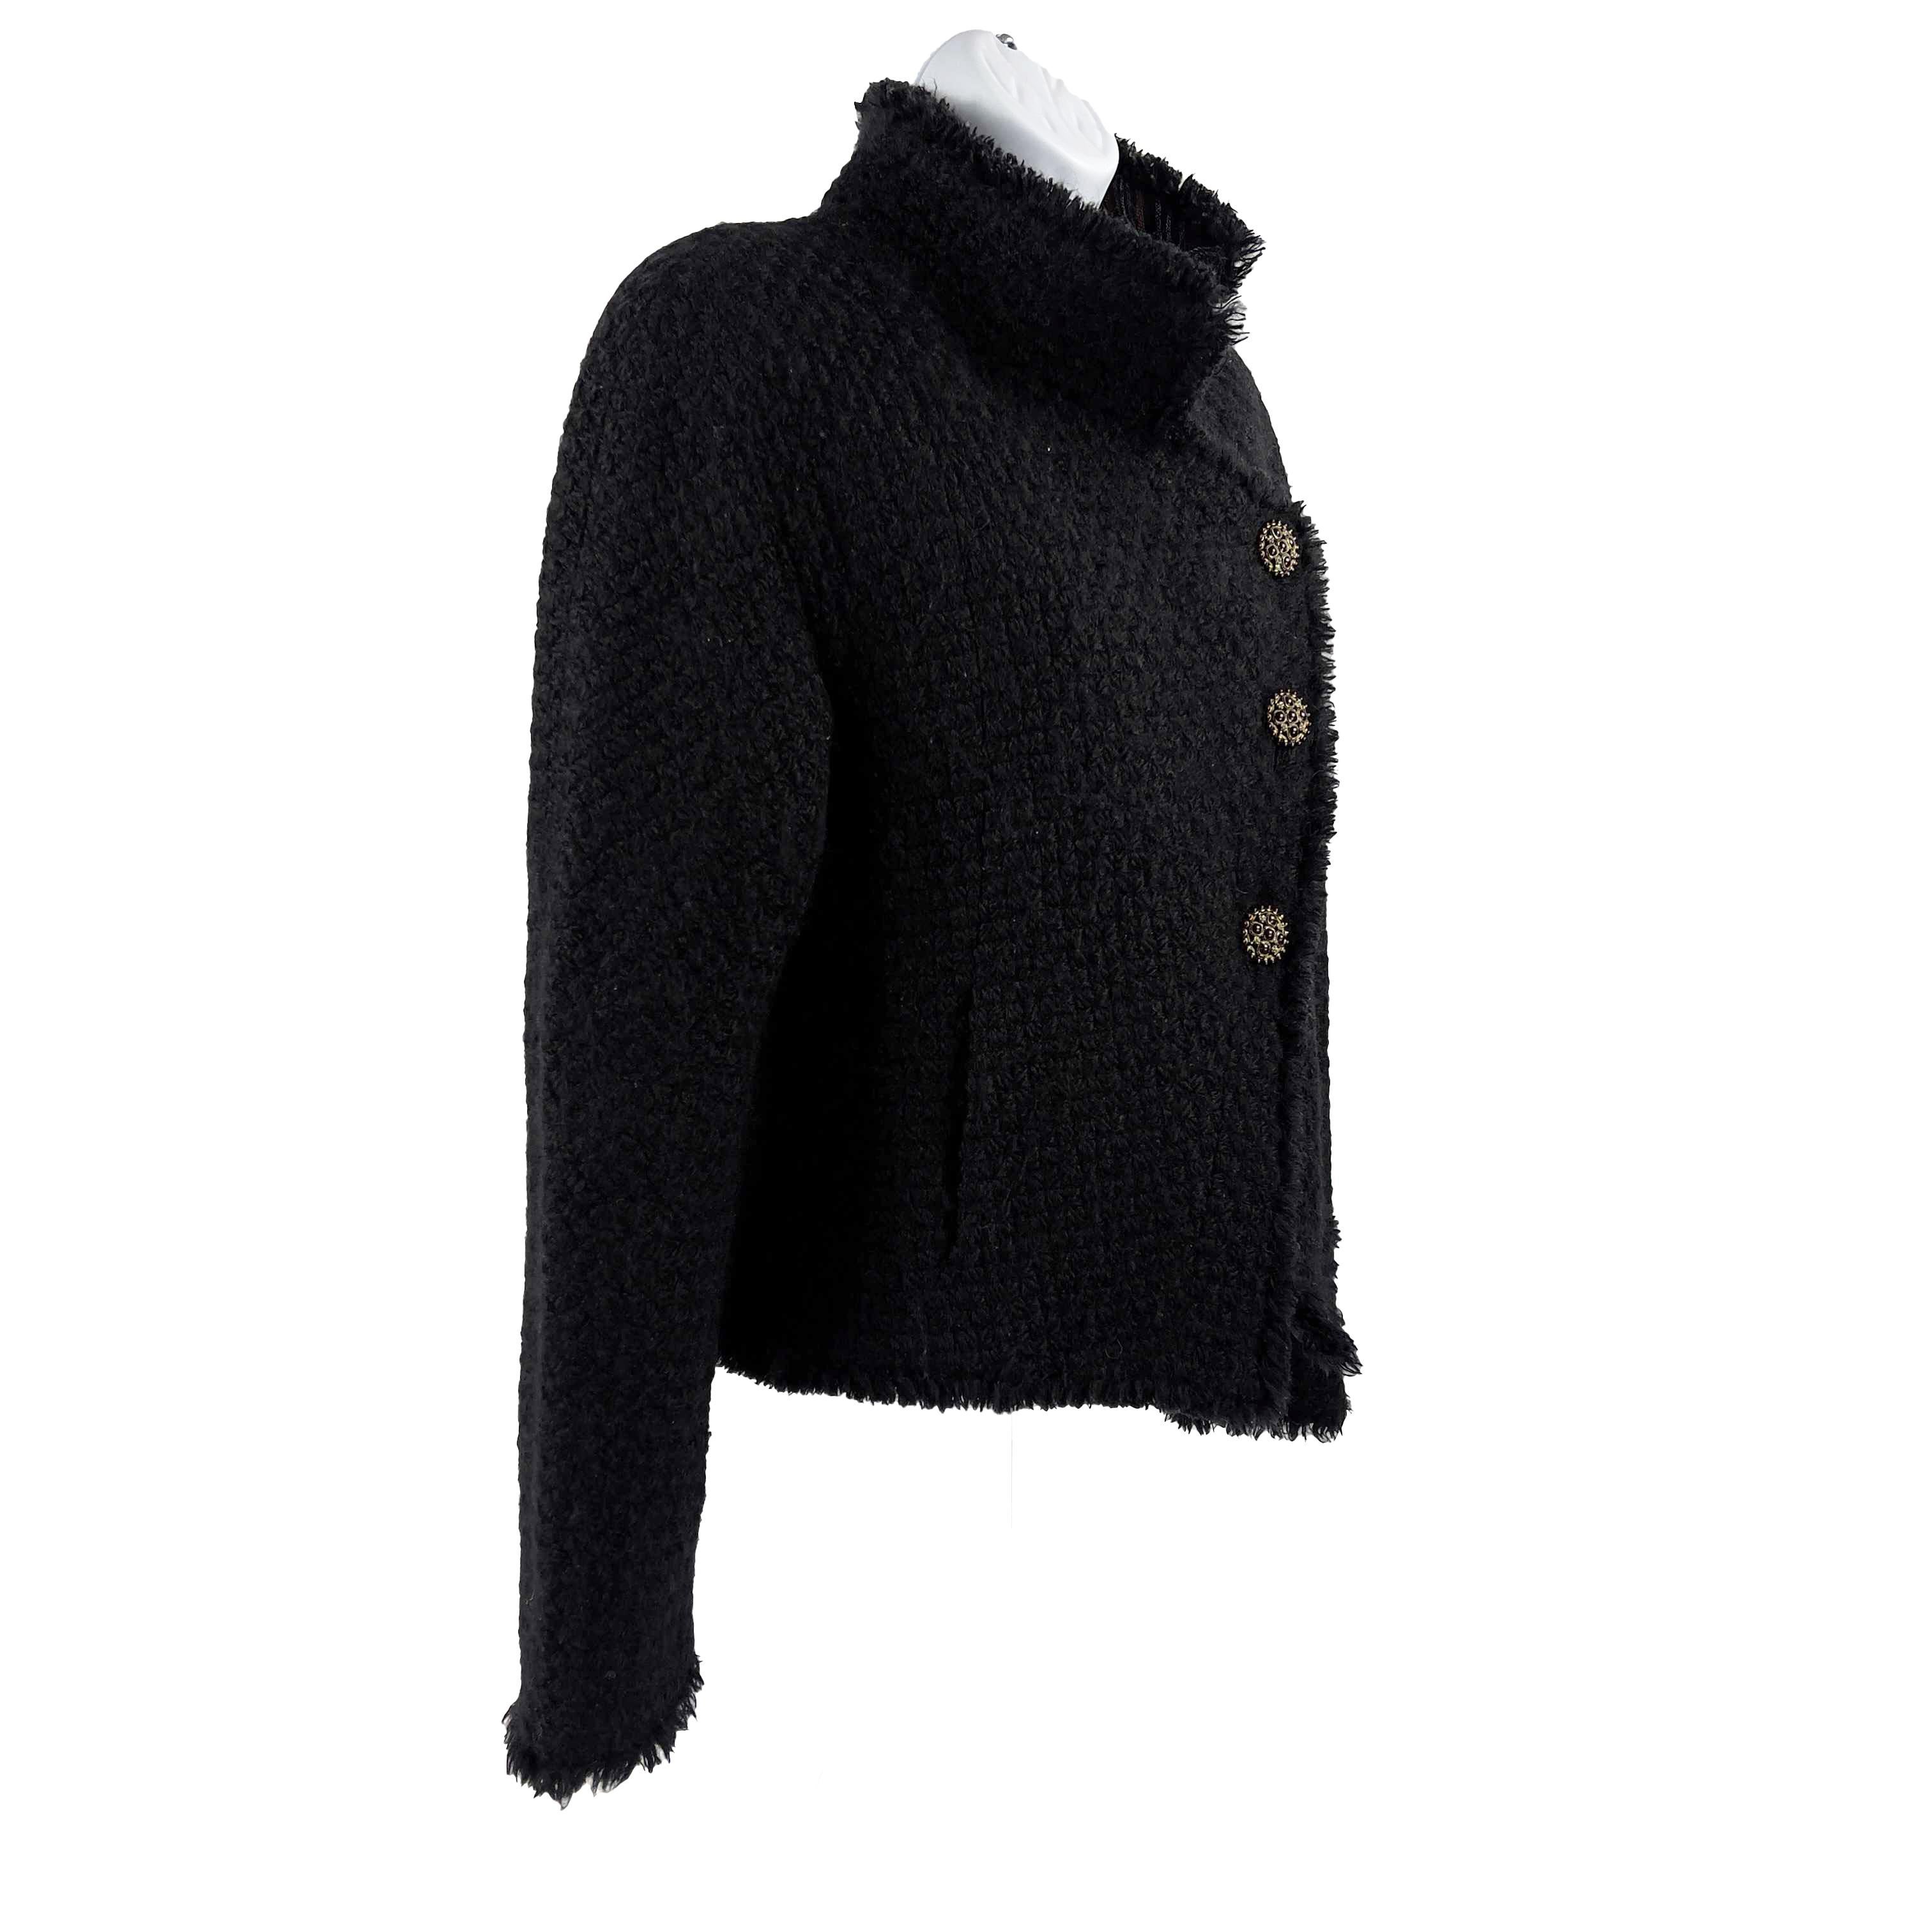 CHANEL -13A Paris-Edinburgh Black Tweed Plaid Jacket - Gripoix Buttons - 36 US 6 2